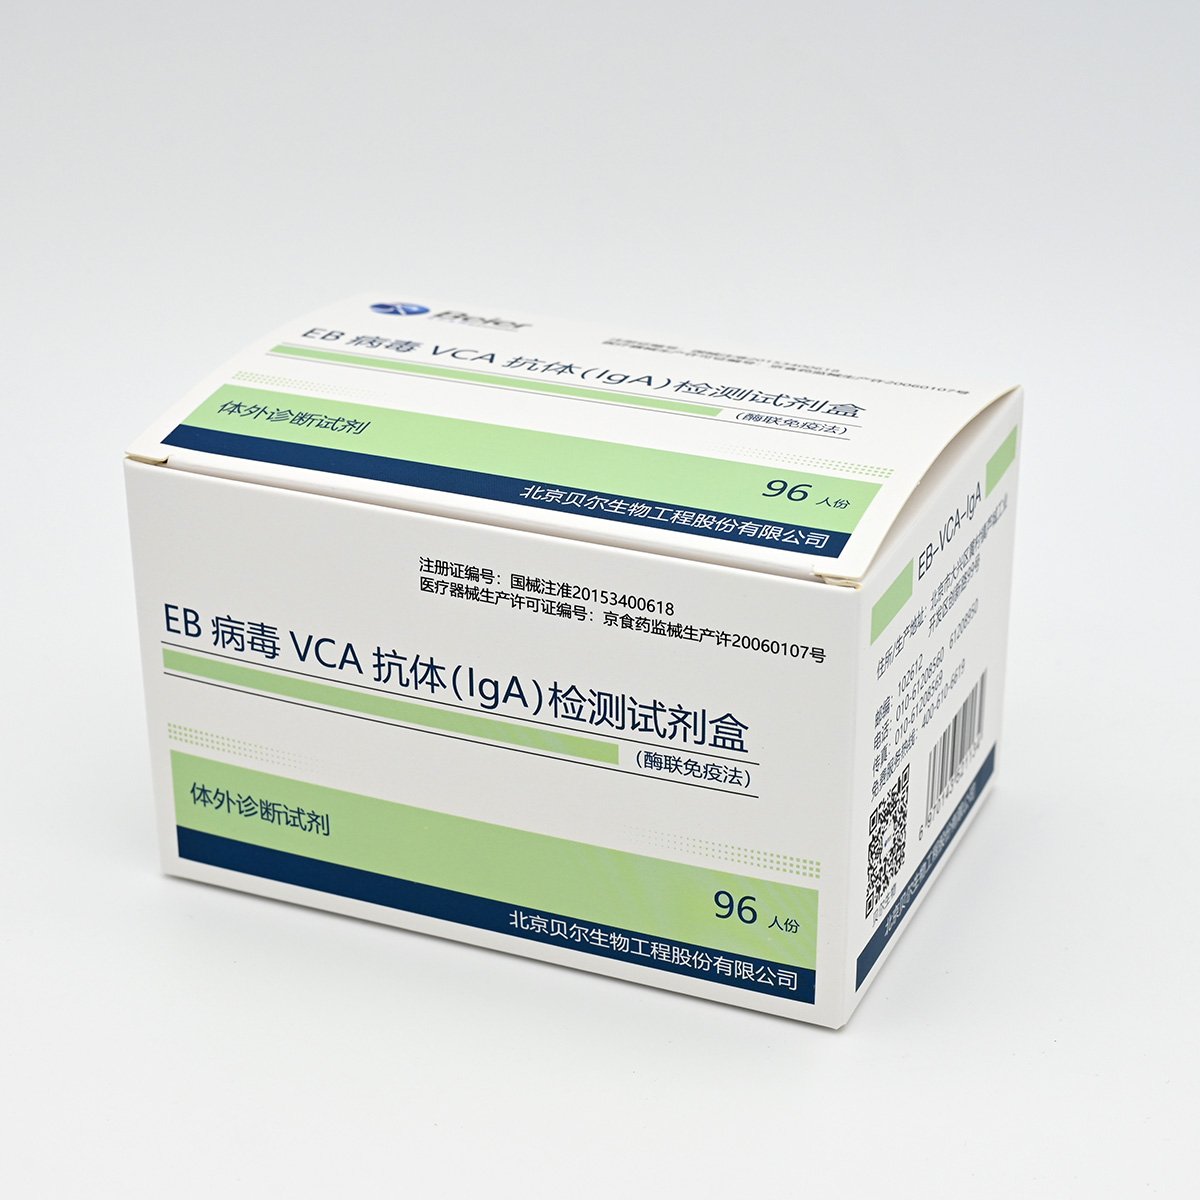 【贝尔】EB病毒VCA抗体(IgA)检测试剂盒(酶联免疫法)